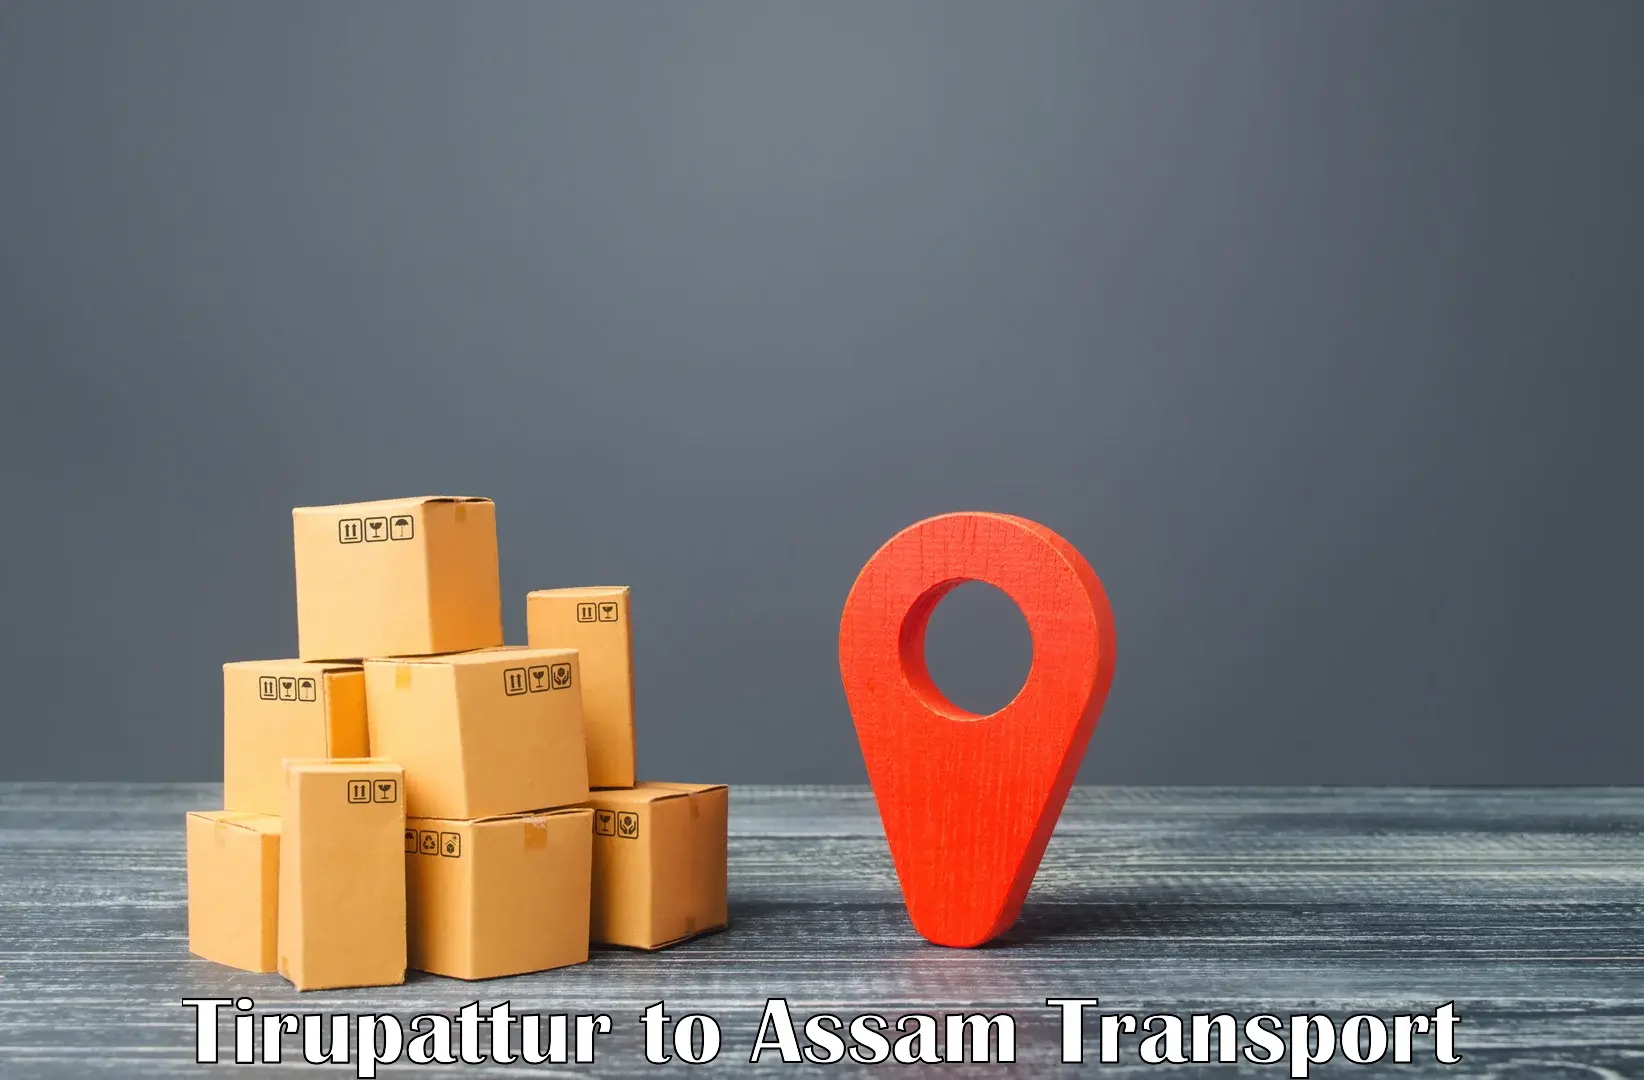 Sending bike to another city Tirupattur to Assam